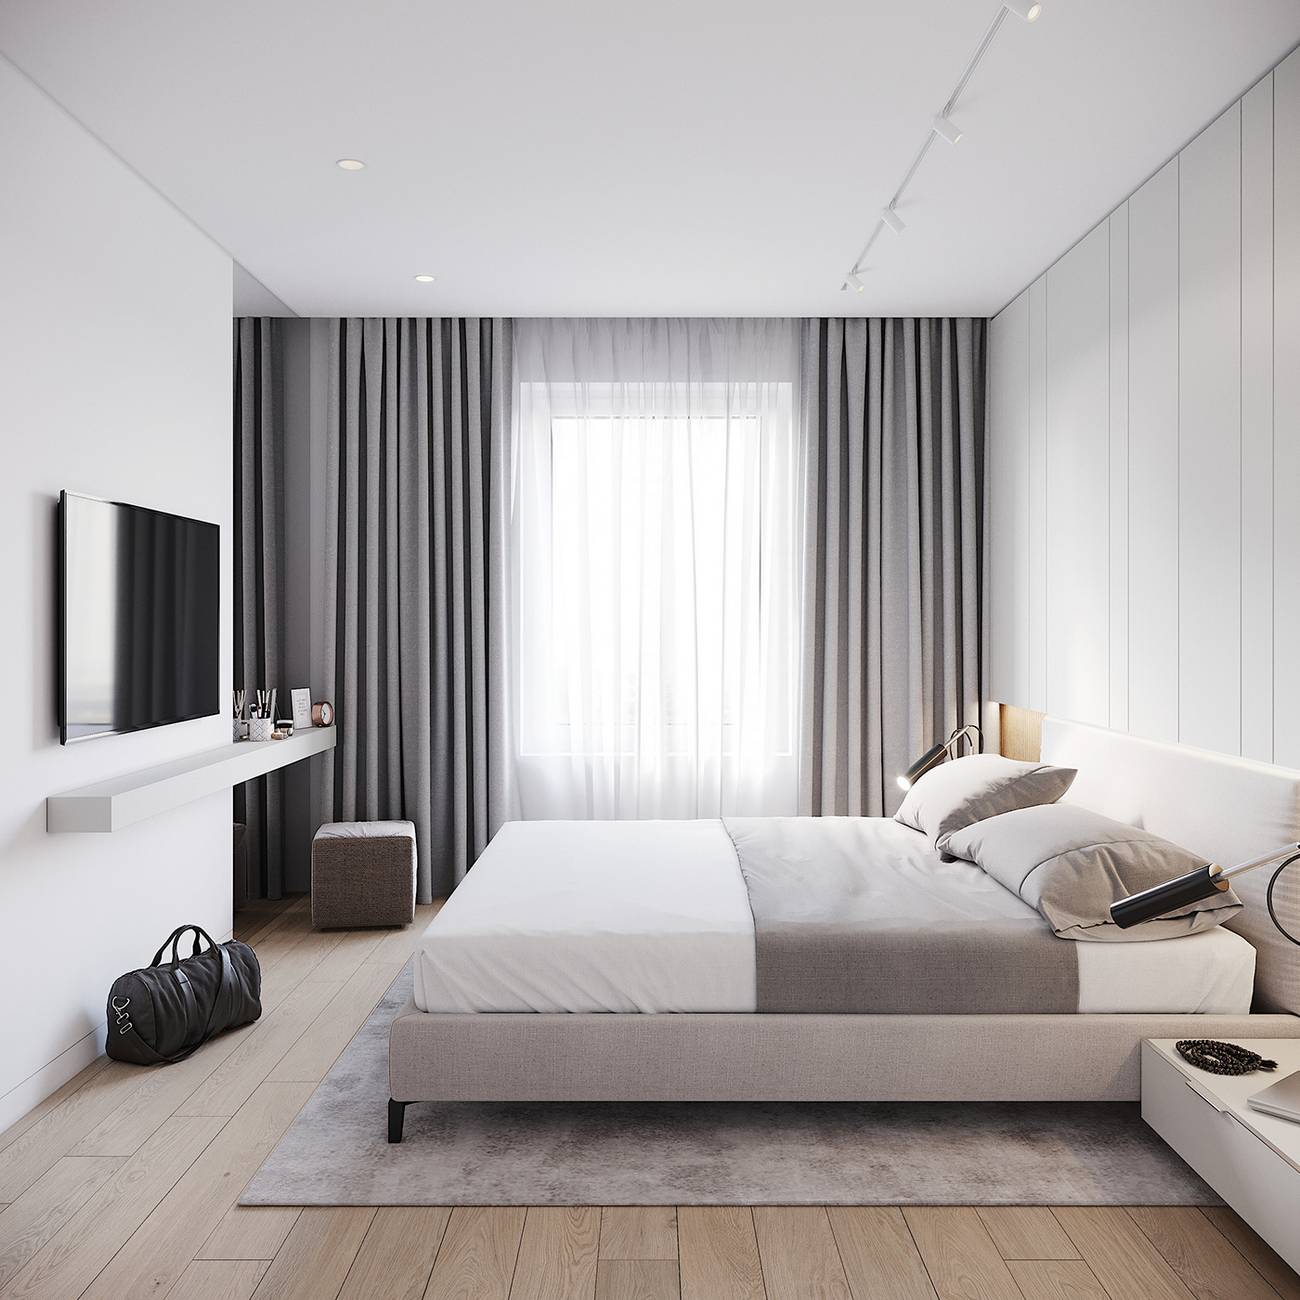 Tương tự phòng khách, phòng ngủ cũng sử dụng gam màu trắng - xám chủ đạo. Nội thất tối giản với đường nét gọn gàng, rất ít phụ kiện trang trí. Rèm cửa sổ tích hợp 2 lớp mỏng và dày để sử dụng theo nhu cầu cản nắng hay tạo sự riêng tư của gia chủ.